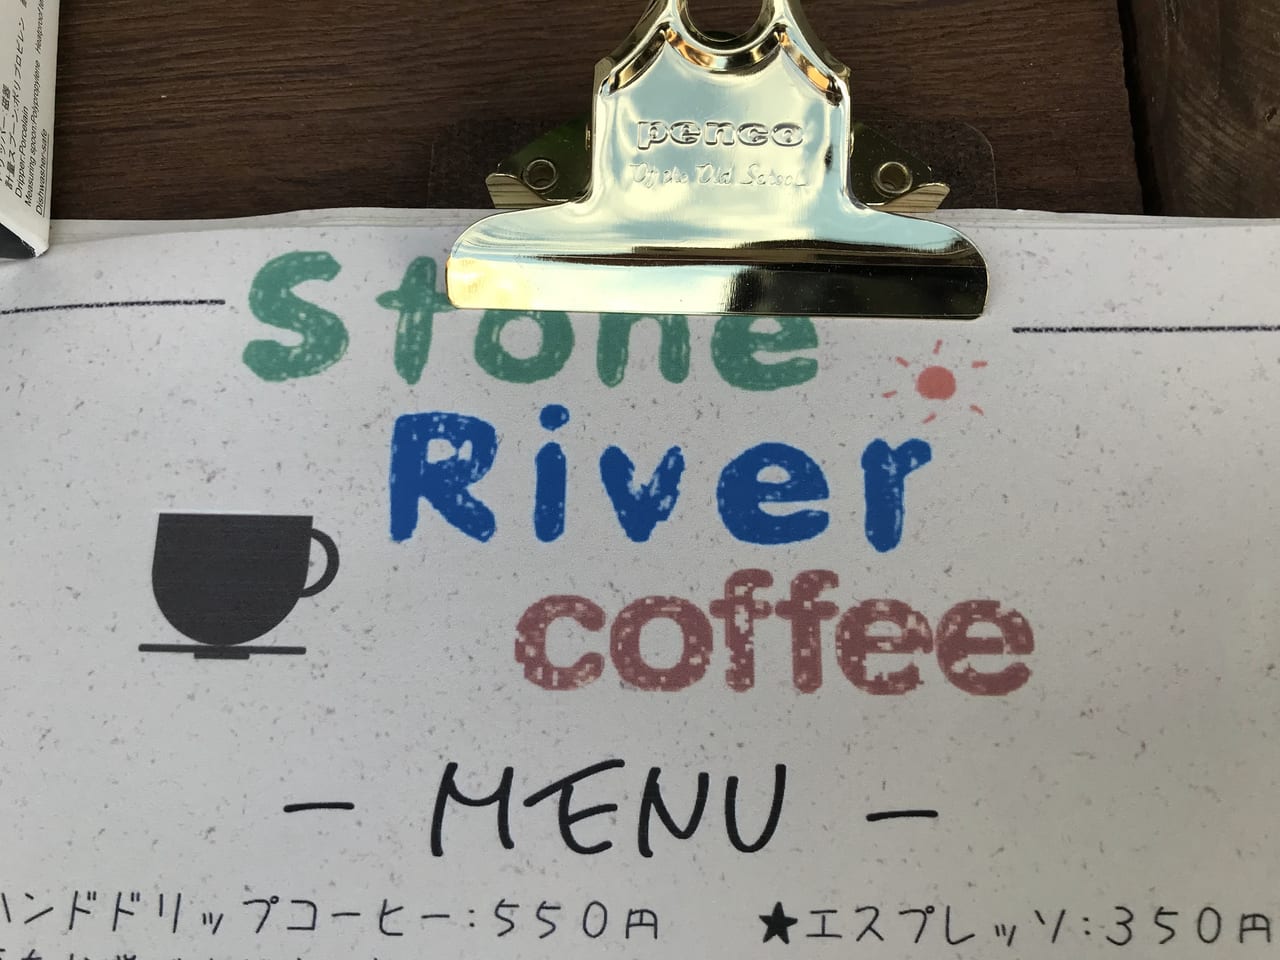 A世田谷区尾山台にカフェ「Stone River coffee」が2021年8月に誕生します。